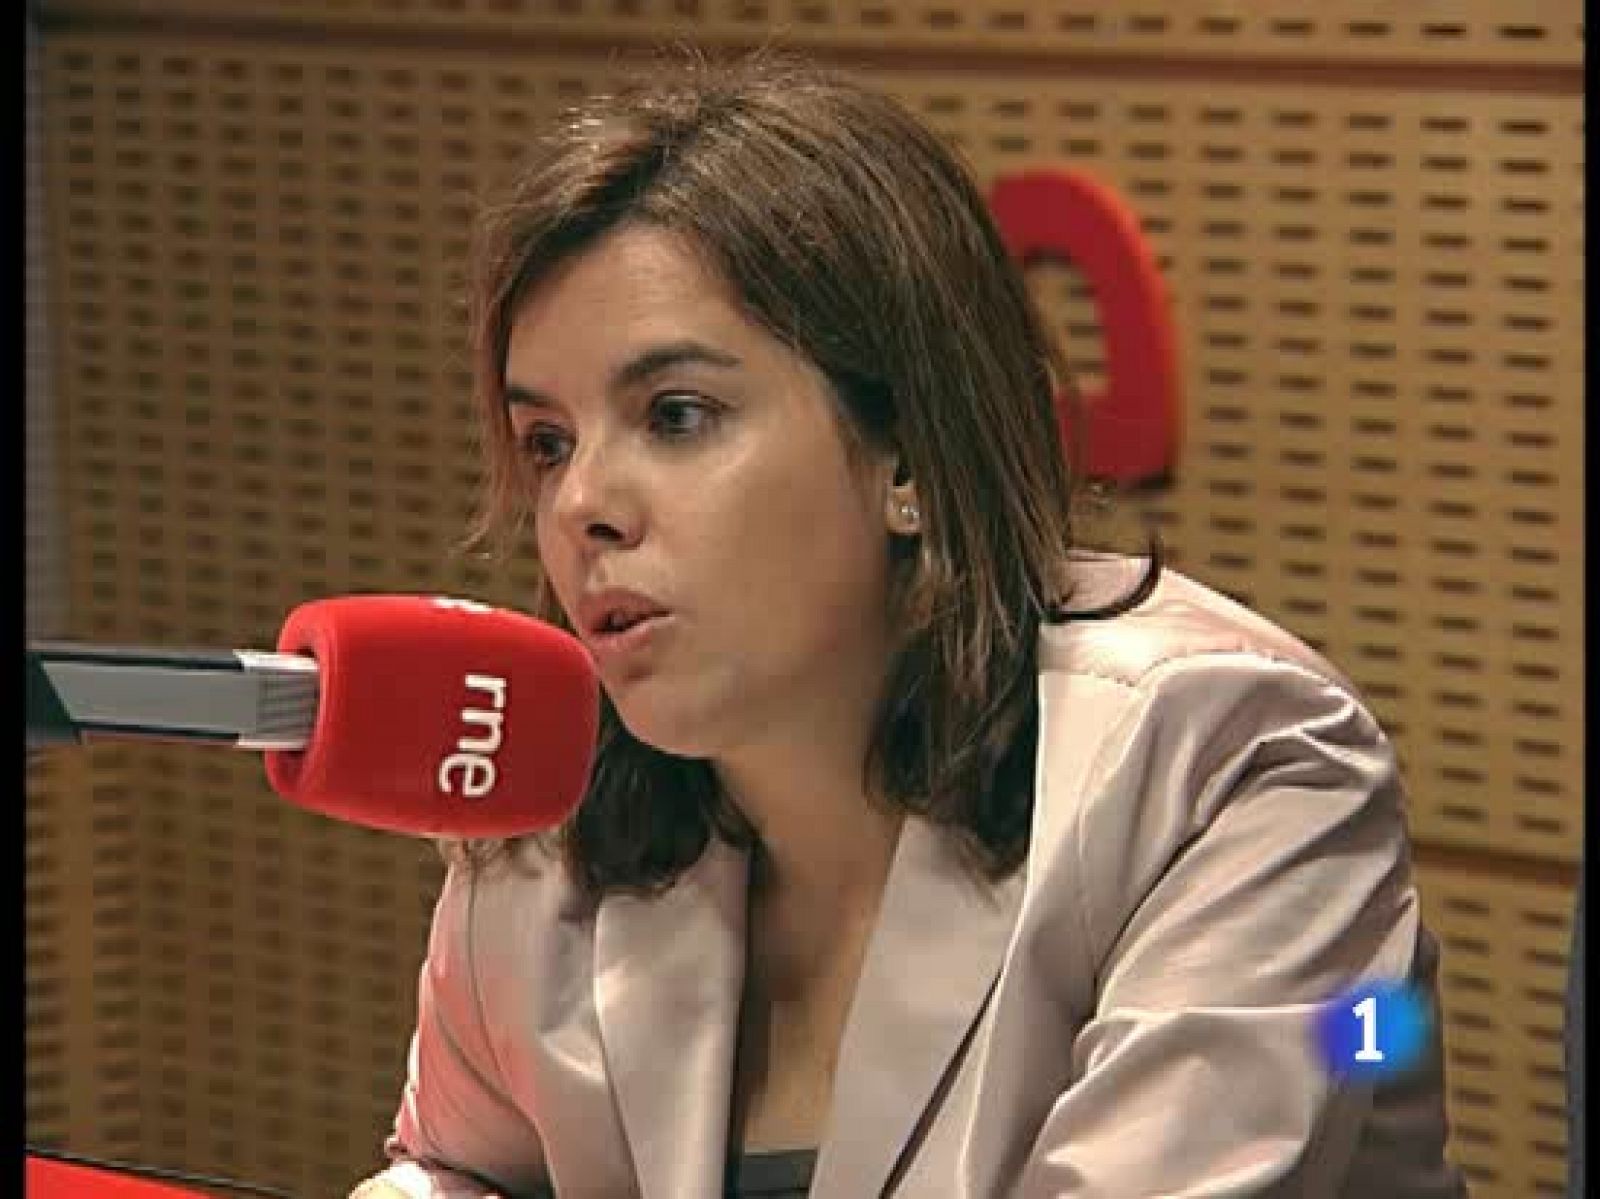 El PSOE acusa al PP de causar alarma social por el brote de gripe en Hoyo de Manzanares para conseguir votos